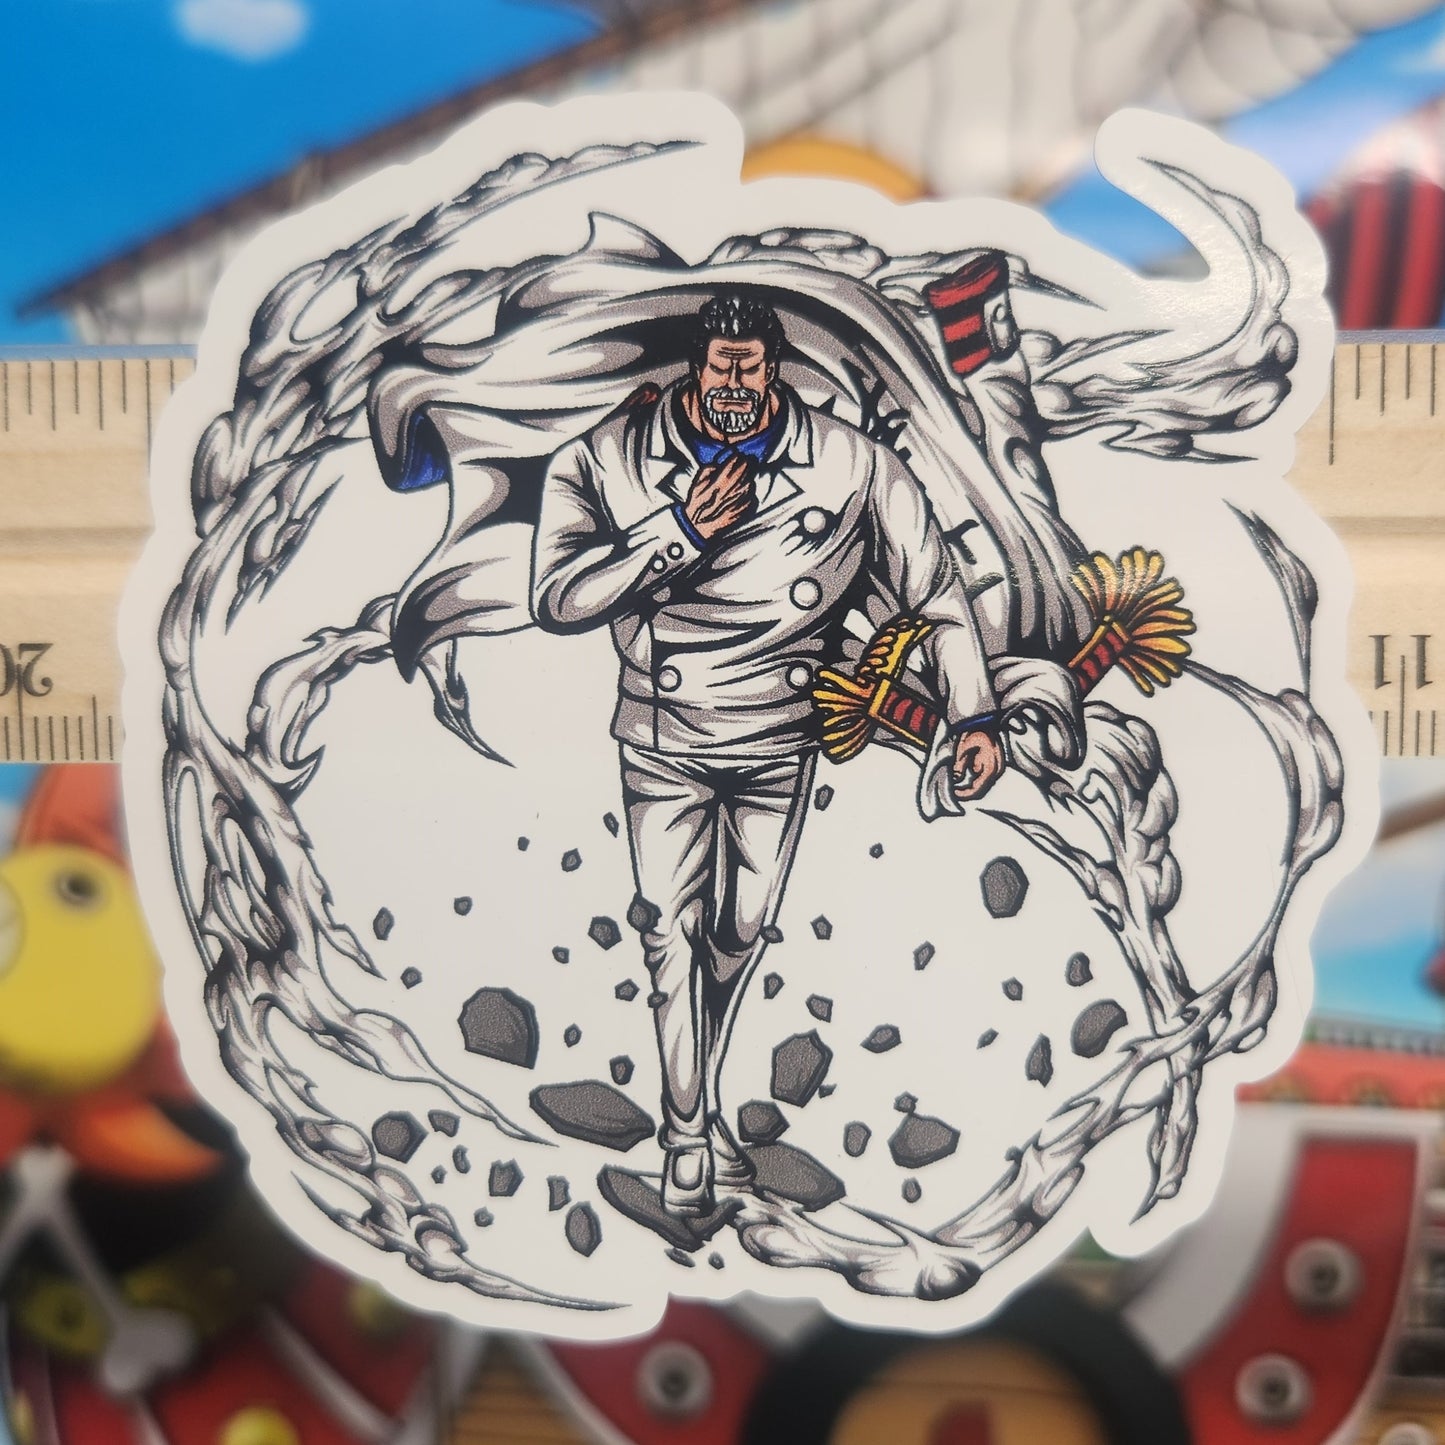 Sticker: One Piece (Monkey D. Garp)